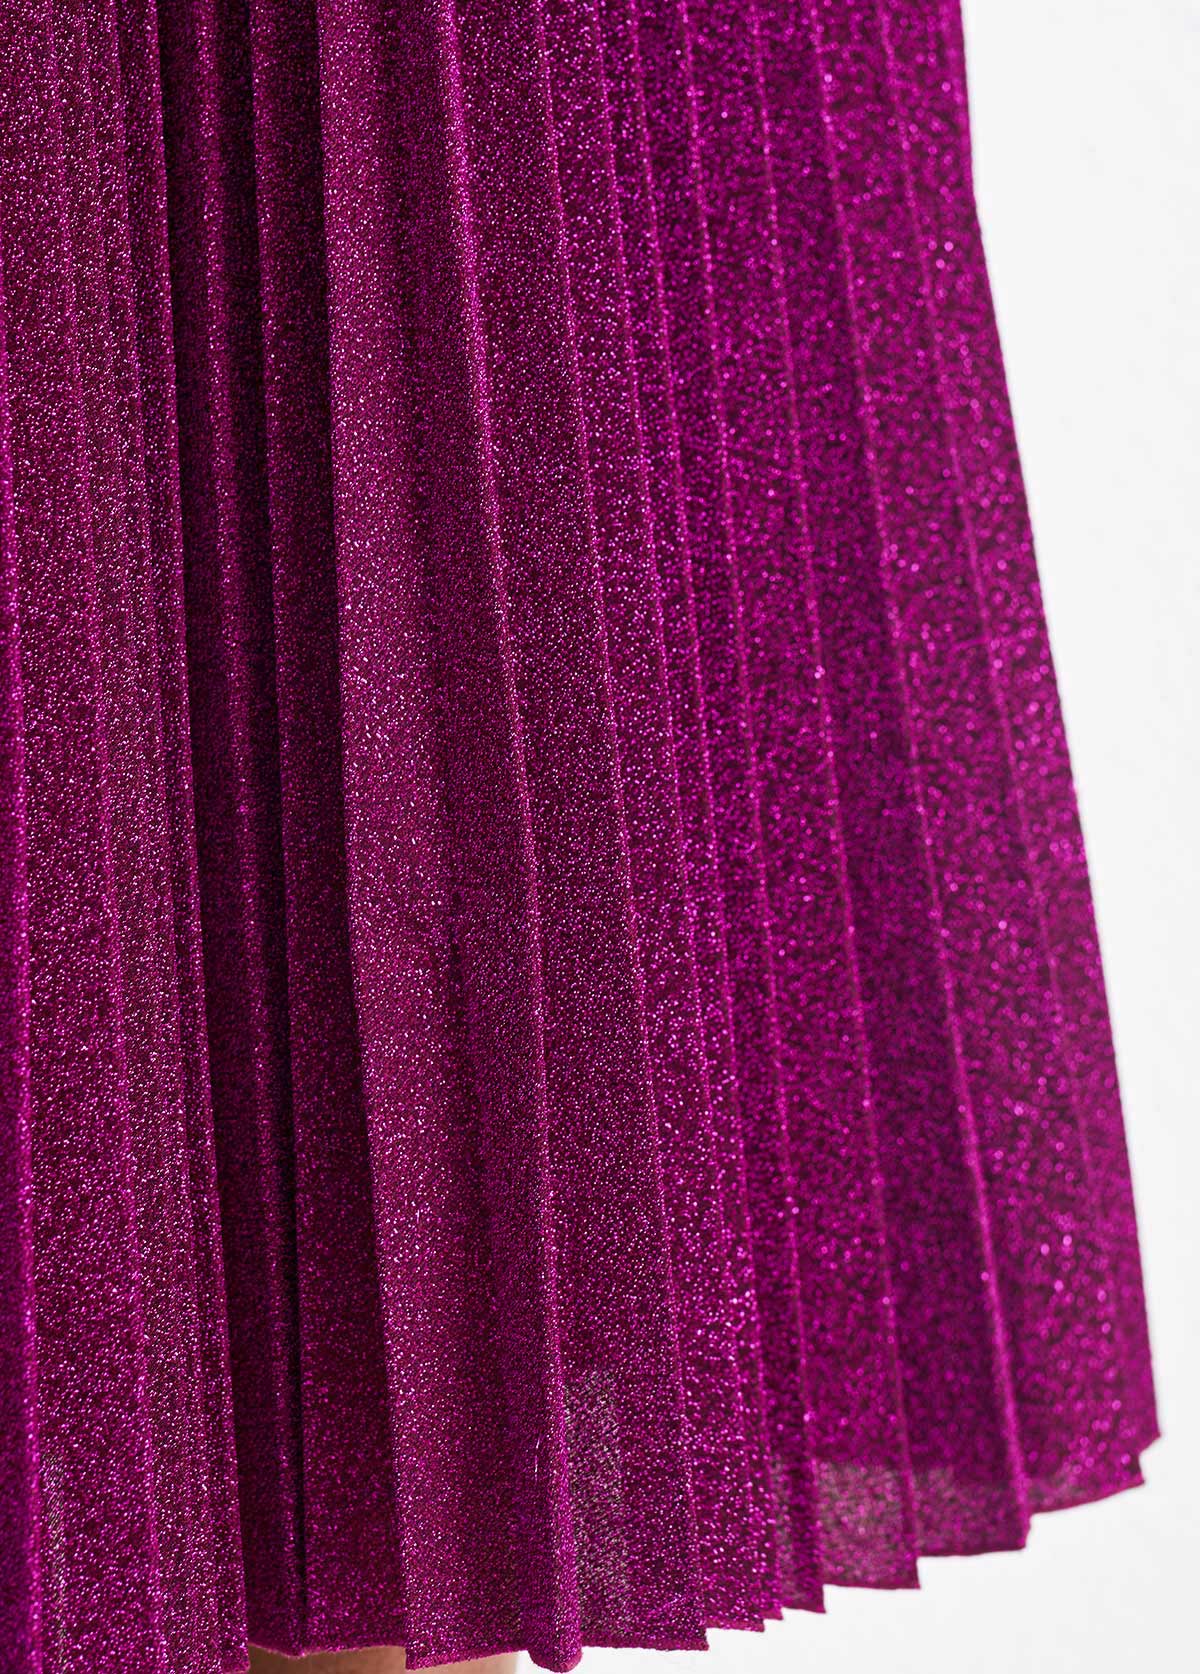 Pleated Dark Reddish Purple Shinning Round Neck Sleeveless Dress